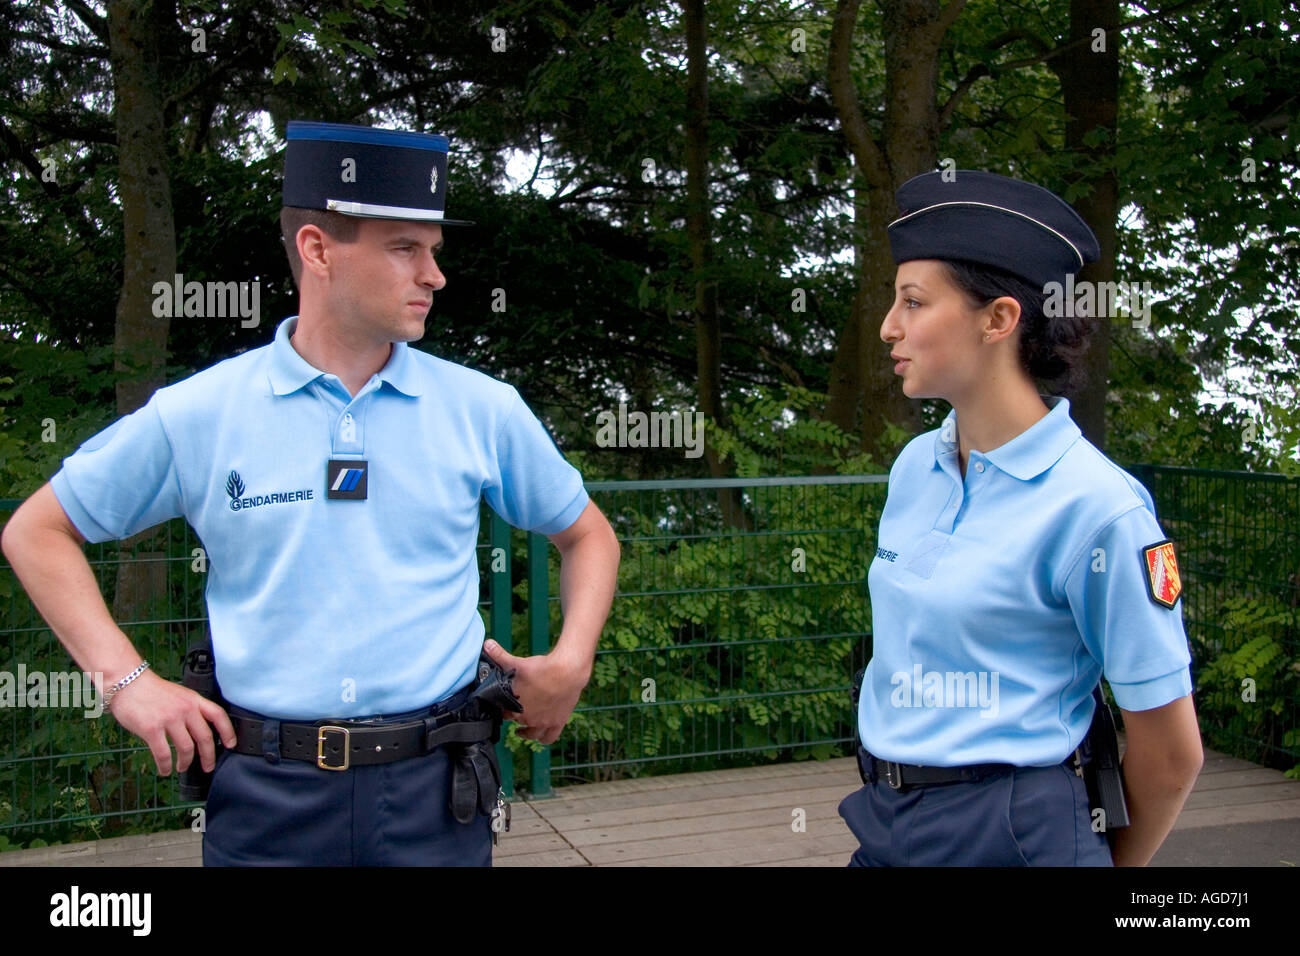 Udvikle Faret vild Kollega French police uniform hi-res stock photography and images - Alamy